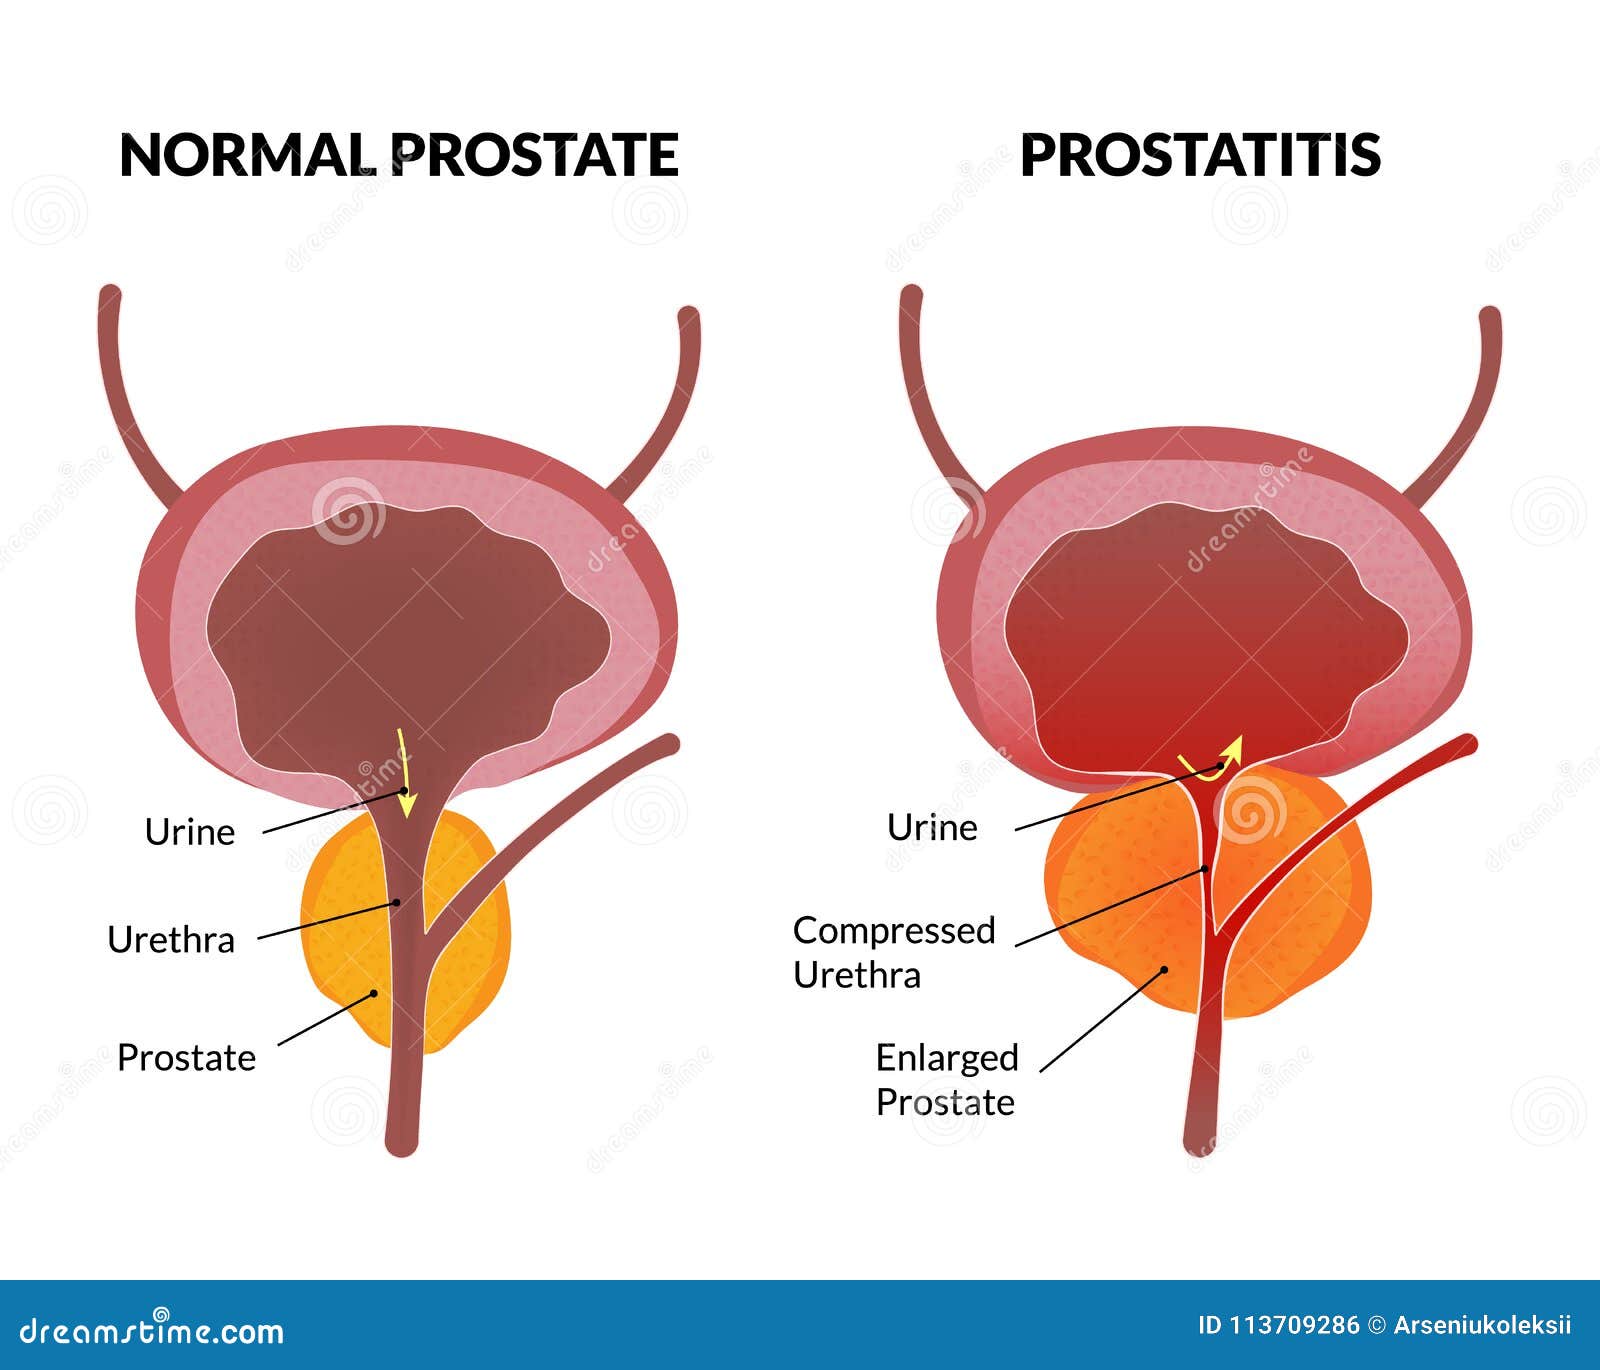 keringés és prostatitis)